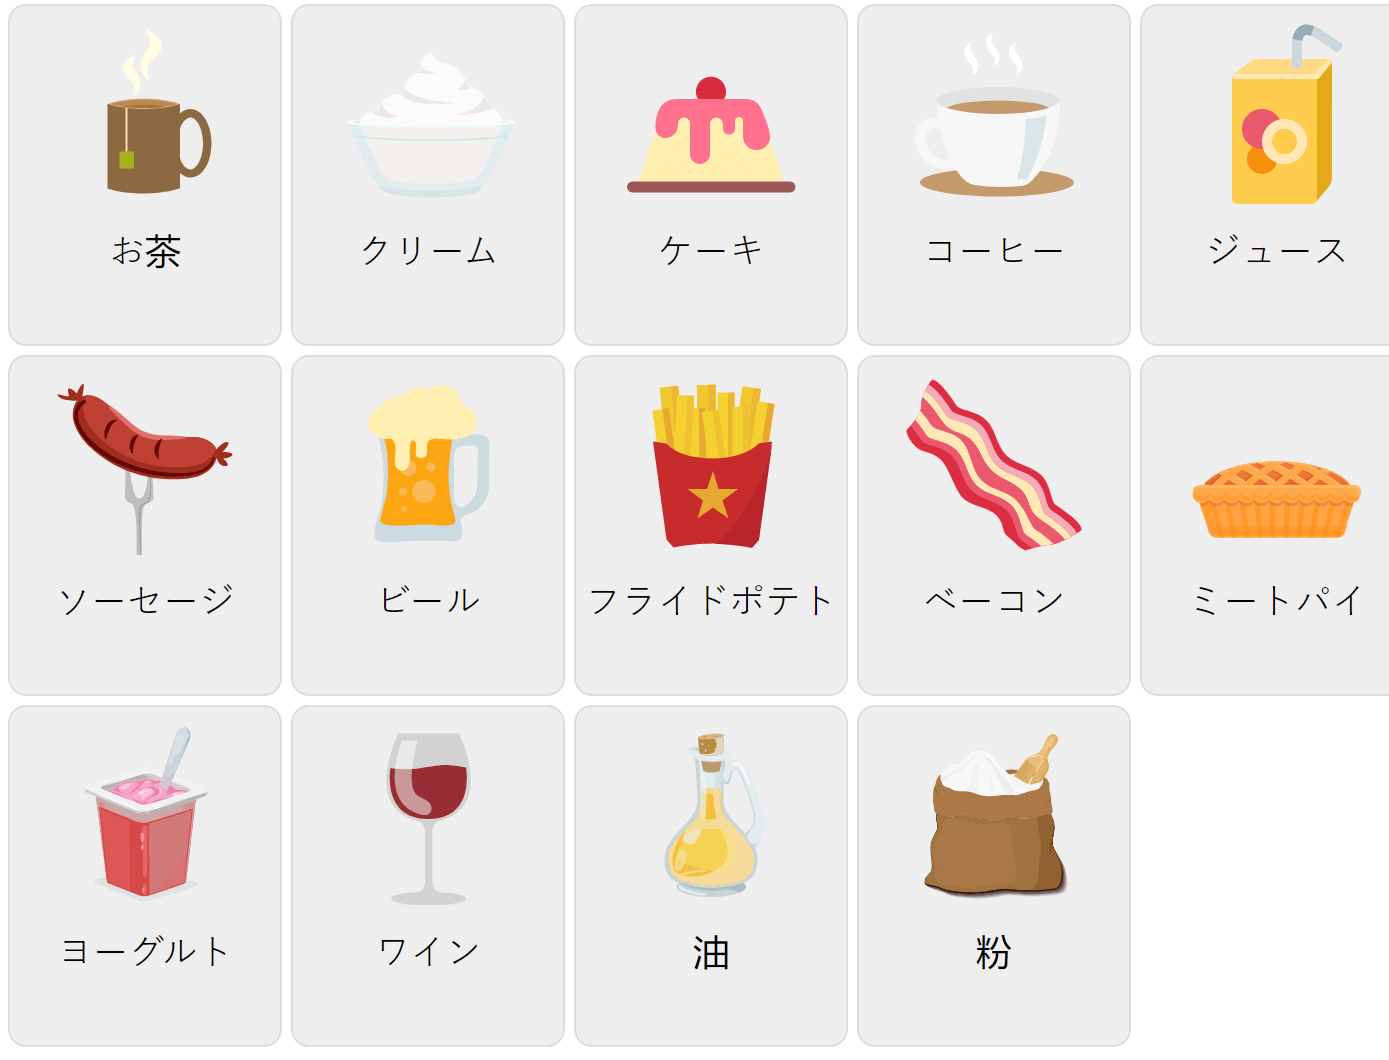 Їжа на японській мові 2